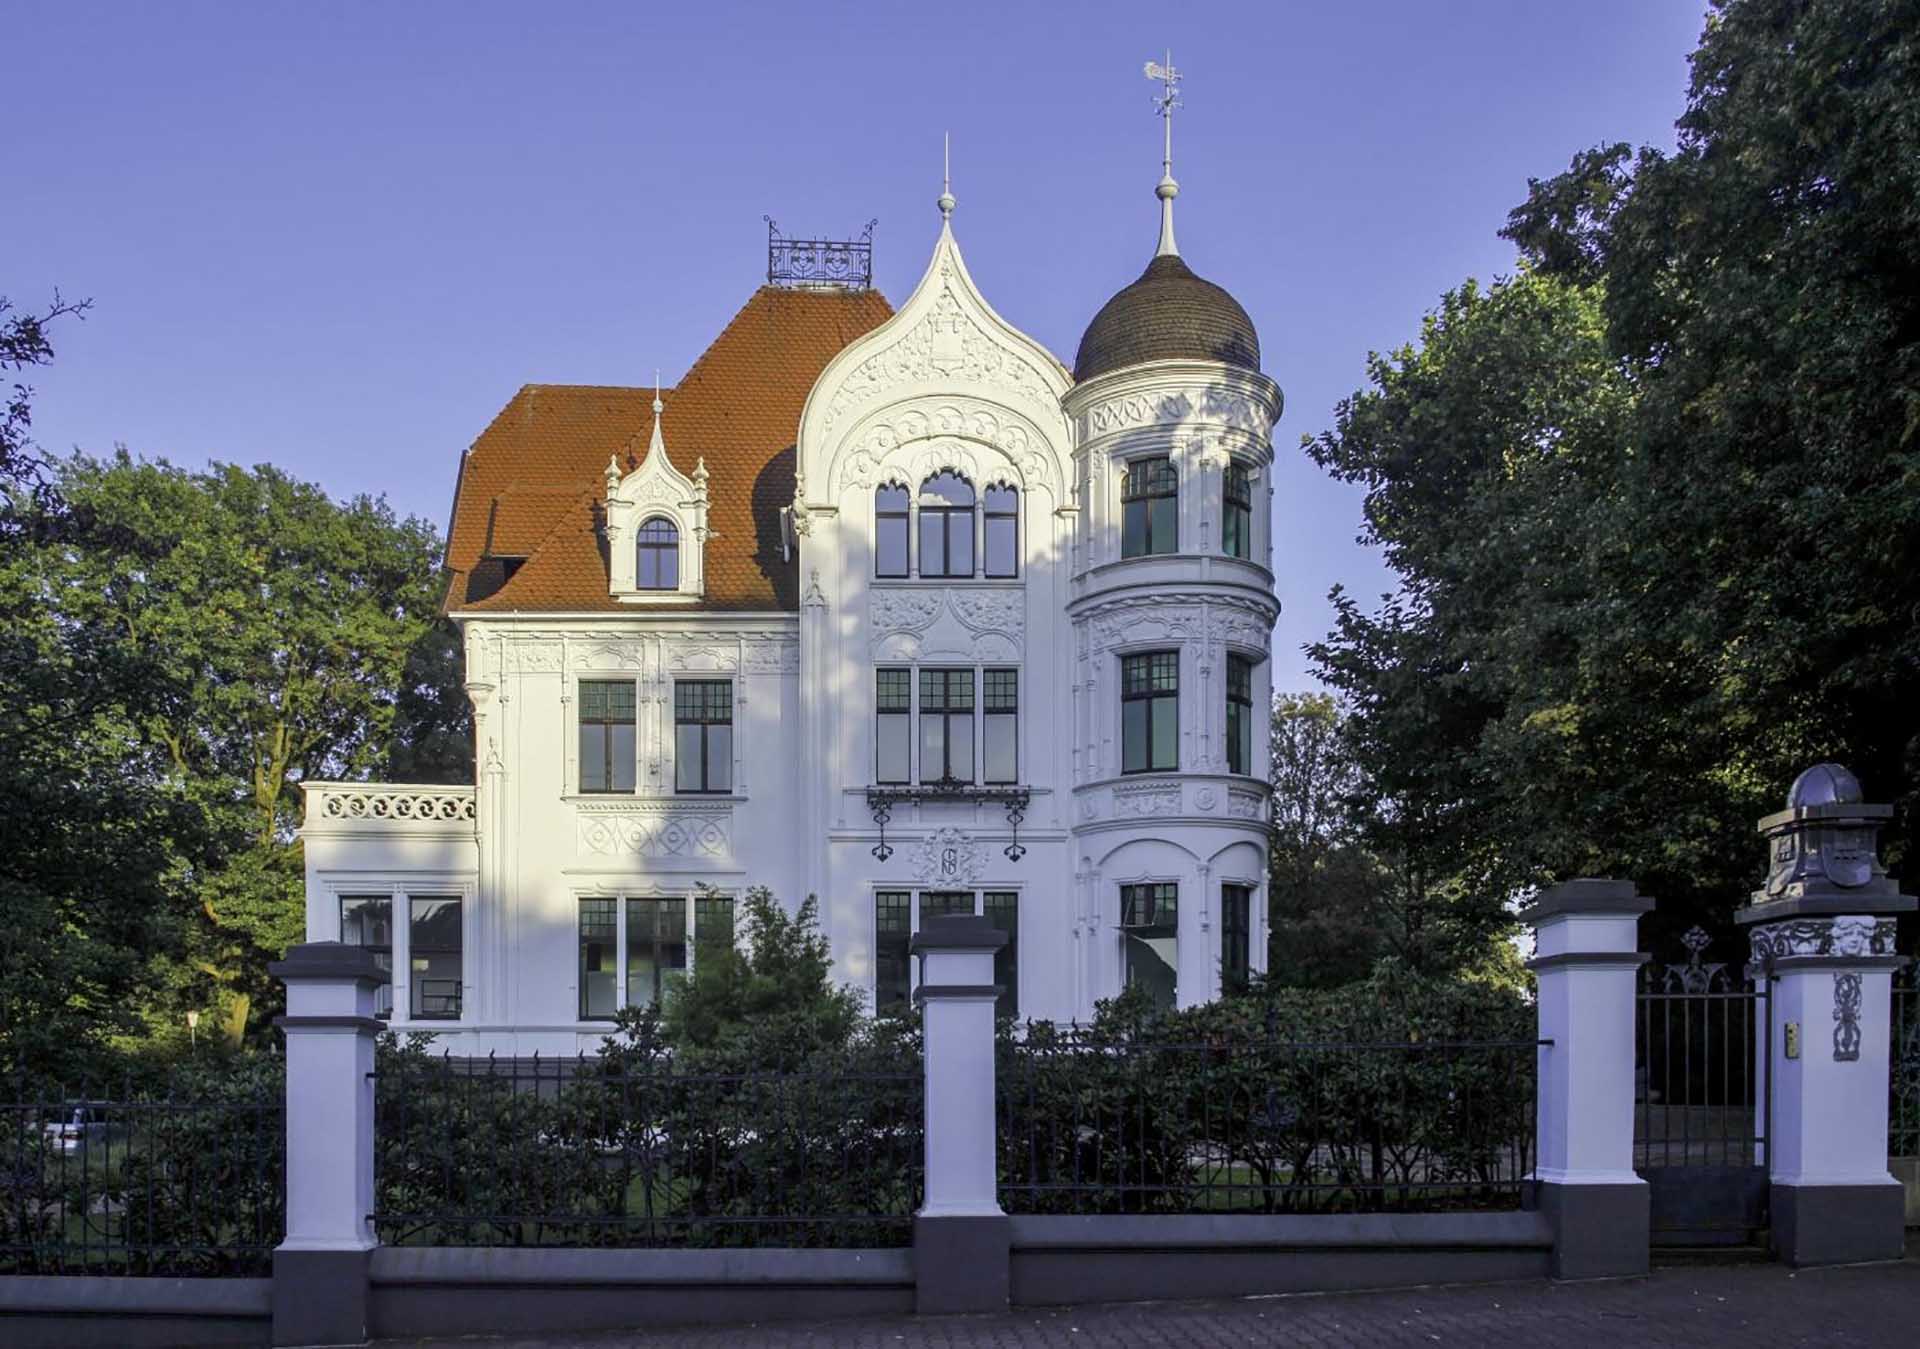 Villa Dickmann in Bottrop, erbaut 1901-03 nach Plänen des Architekten Nebel.